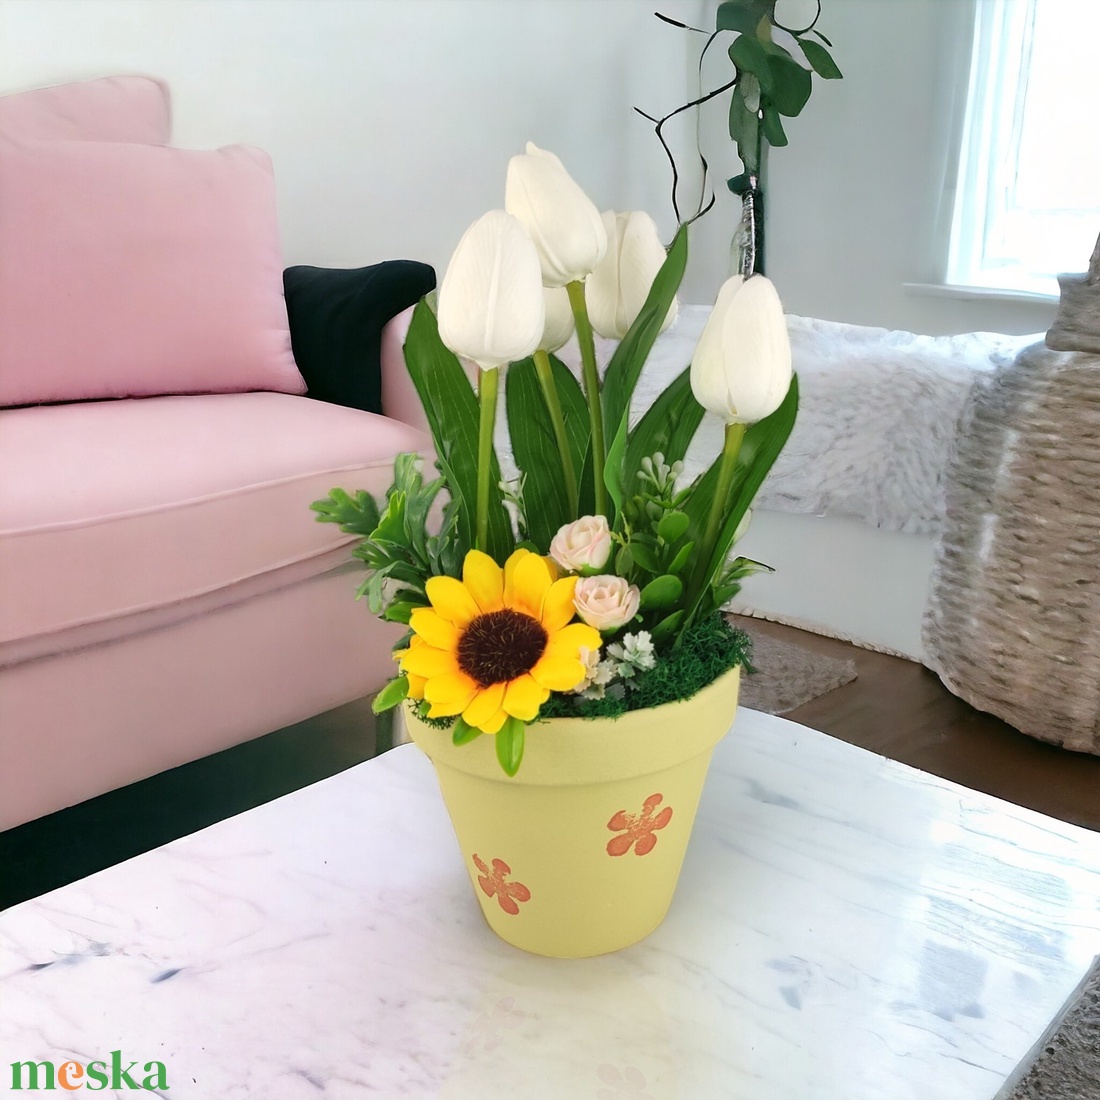 Fehér tulipánok színes agyagkaspóban napraforgóval TUG546FH - otthon & lakás - dekoráció - virágdísz és tartó - csokor & virágdísz - Meska.hu